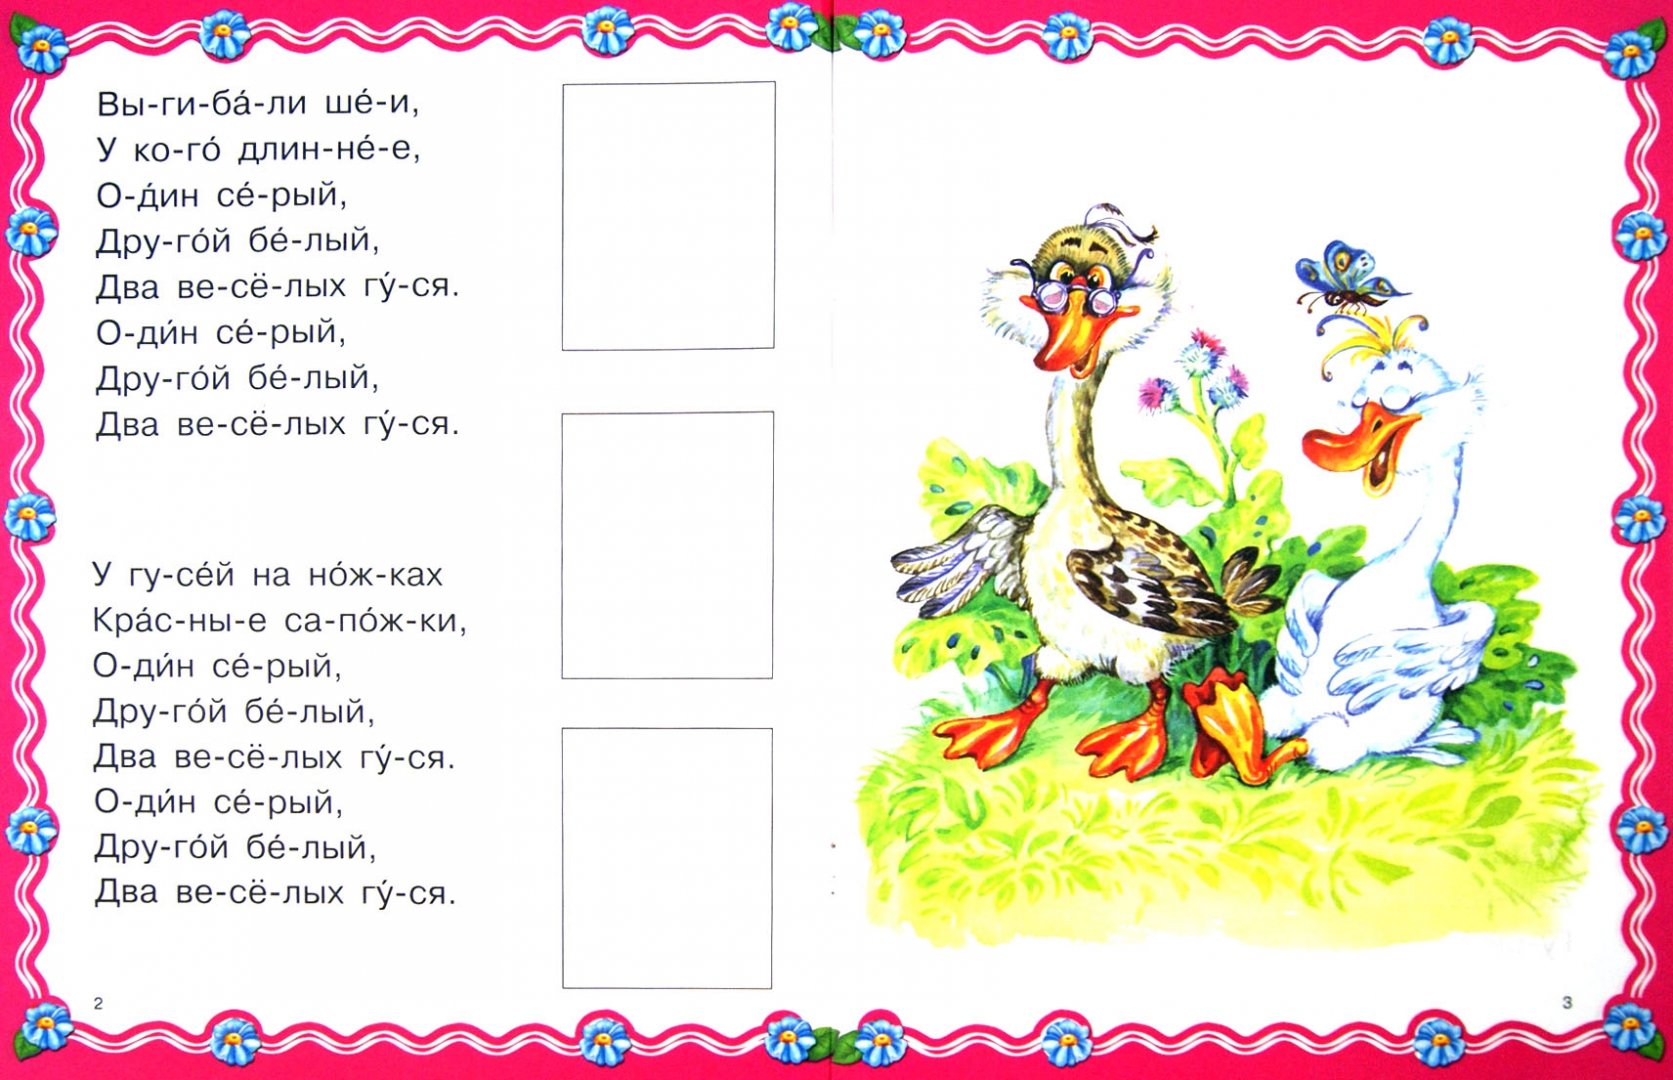 Иллюстрация 1 из 10 для Жили у бабуси два веселых гуся | Лабиринт - книги. Источник: Лабиринт